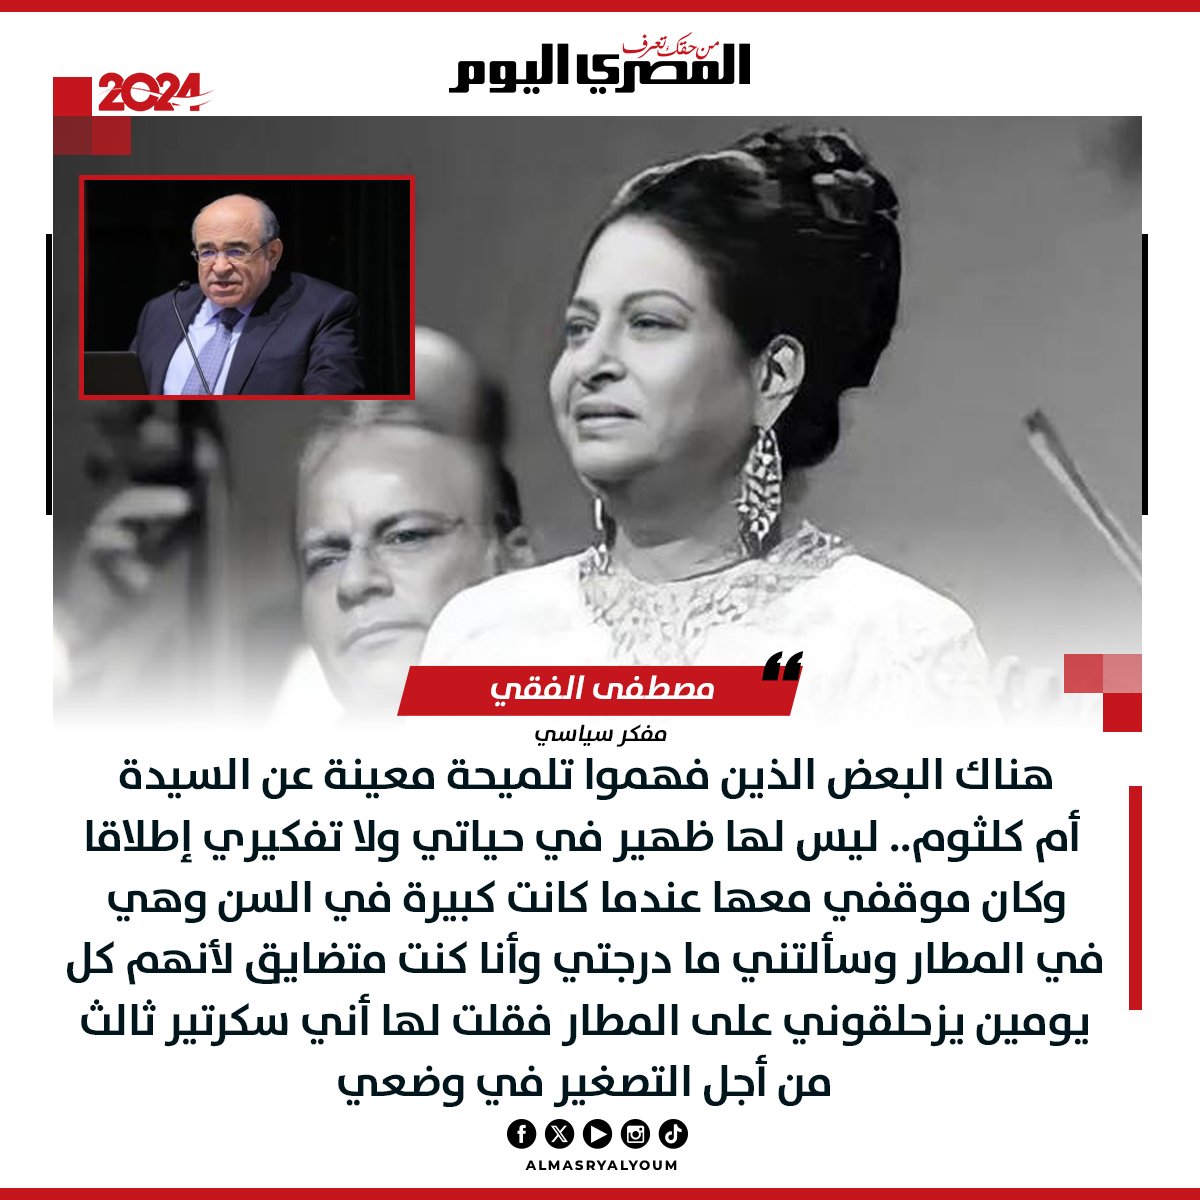 مصطفى الفقي: «الناس فهمت تلميحة معينة بشأن تصريحاتي عن السيدة #أم_كلثوم» 